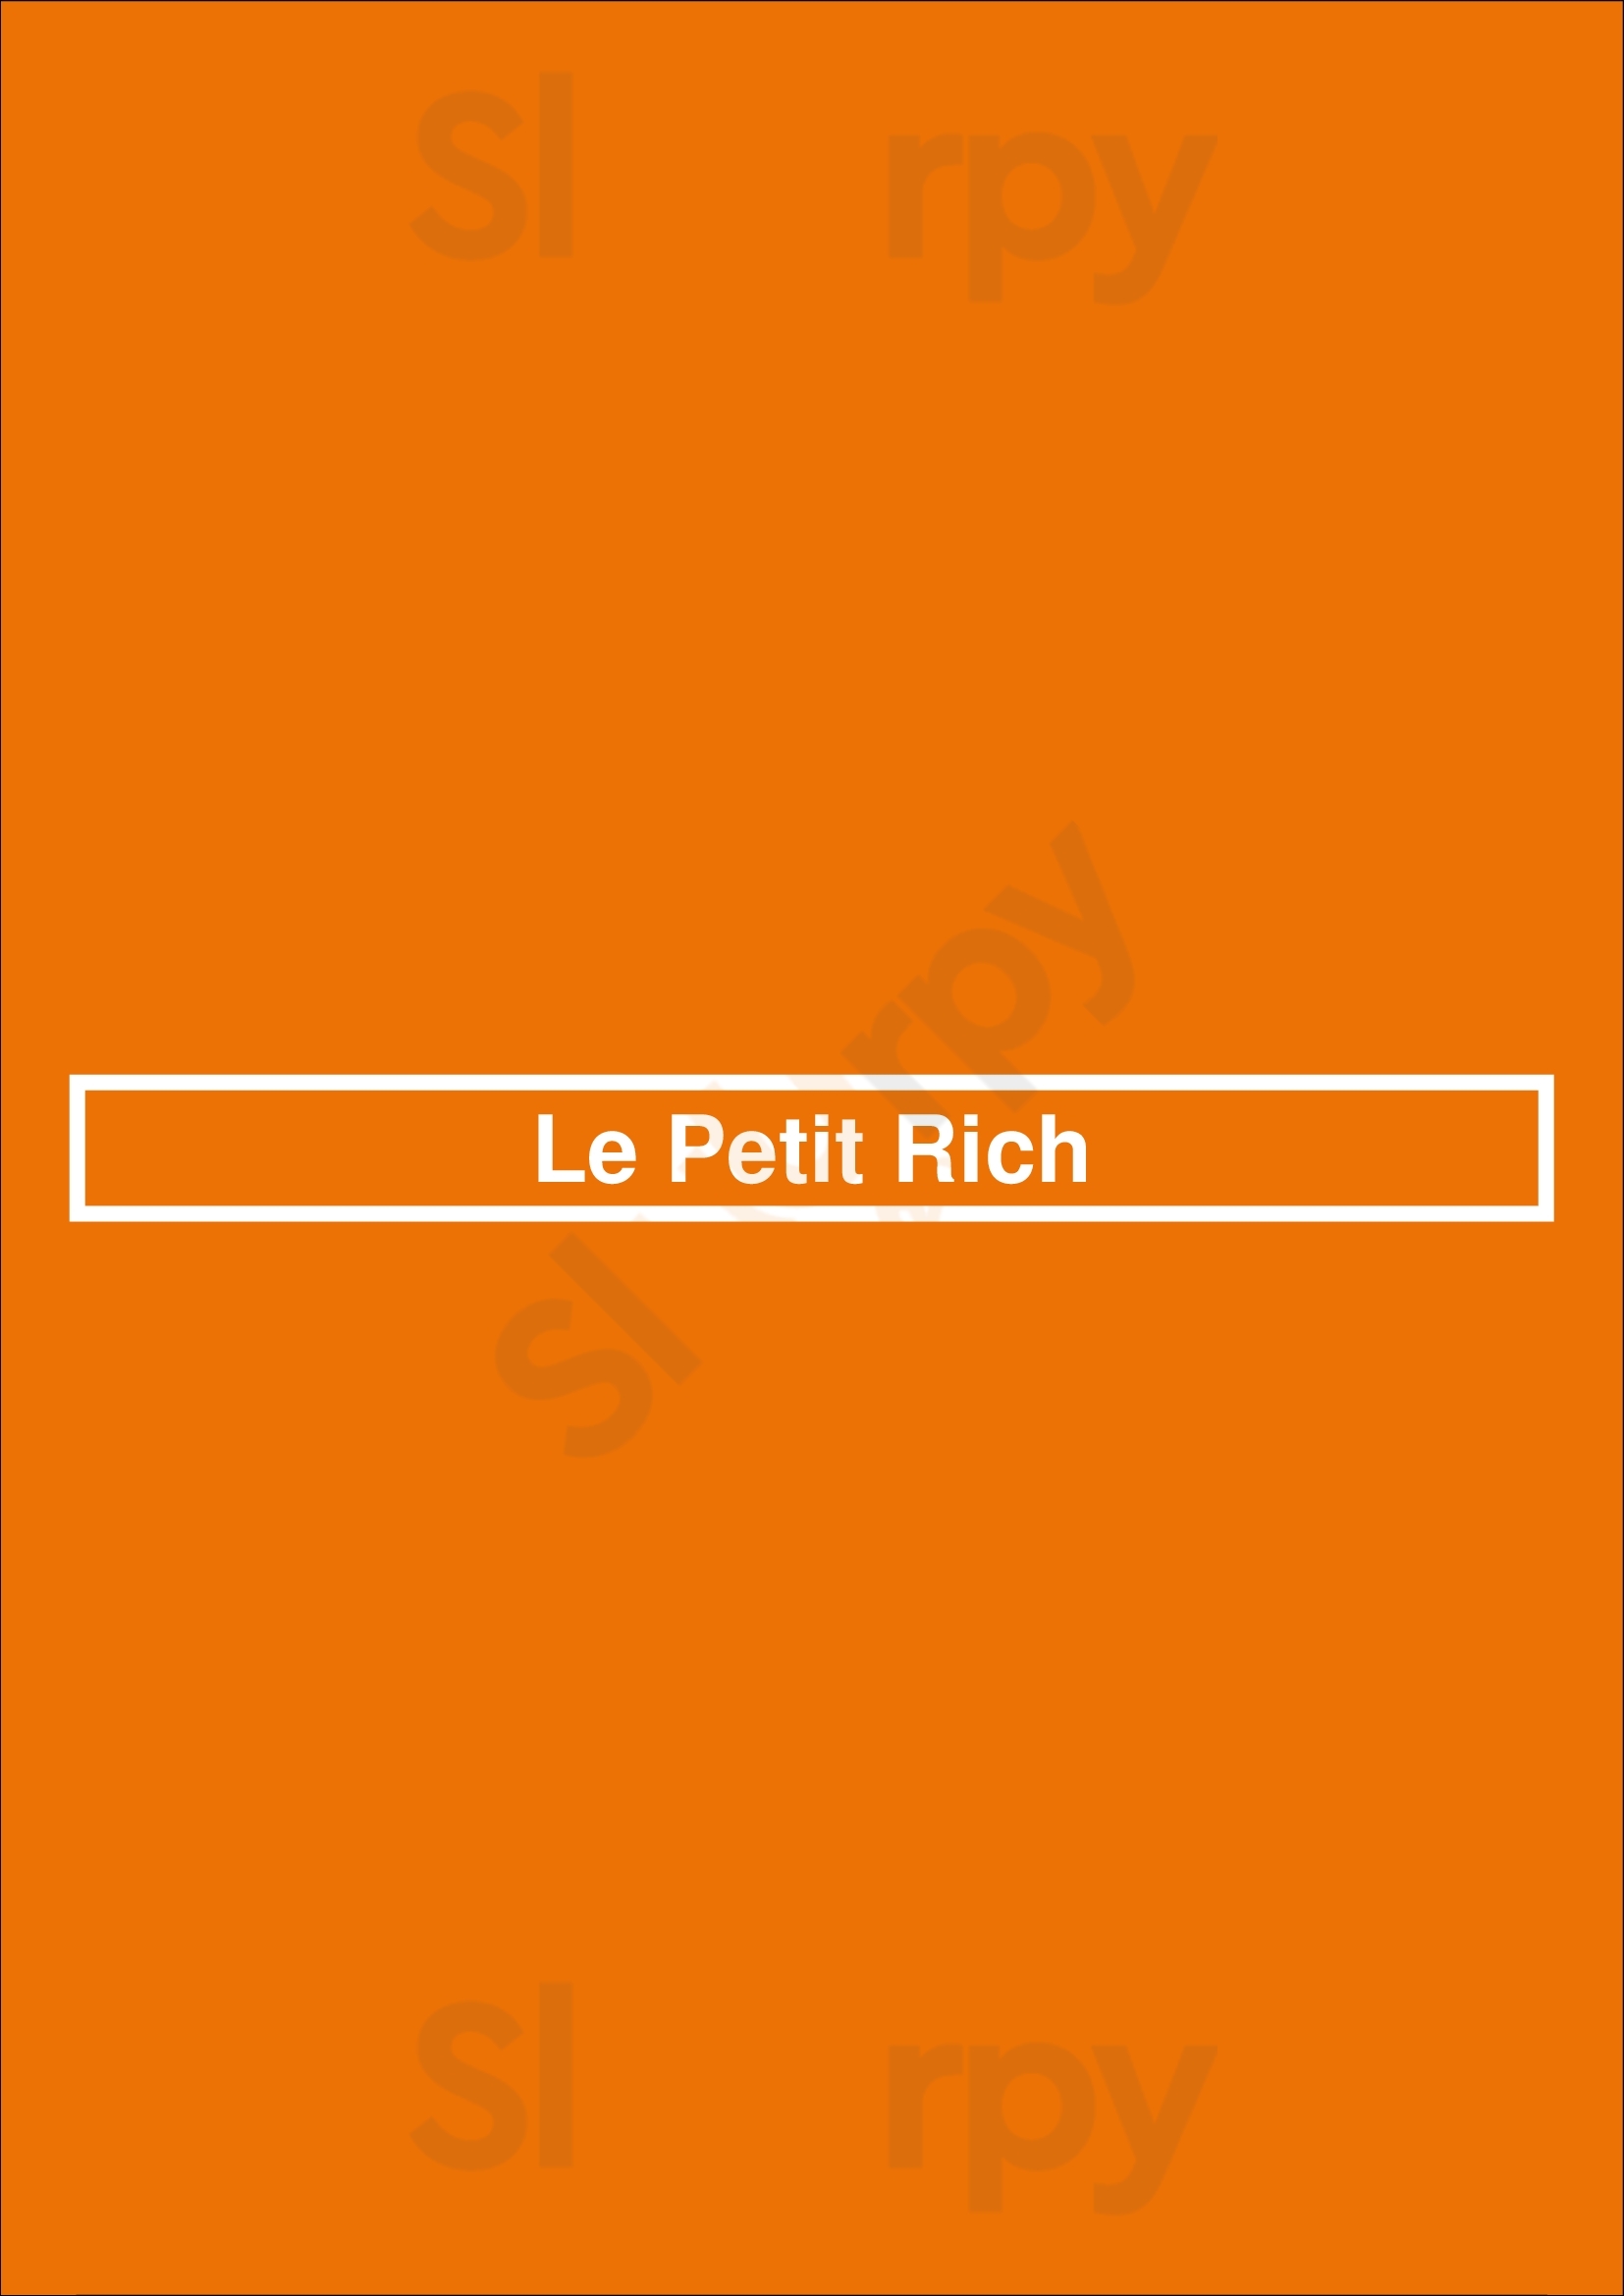 Le Petit Rich Boulogne-Billancourt Menu - 1